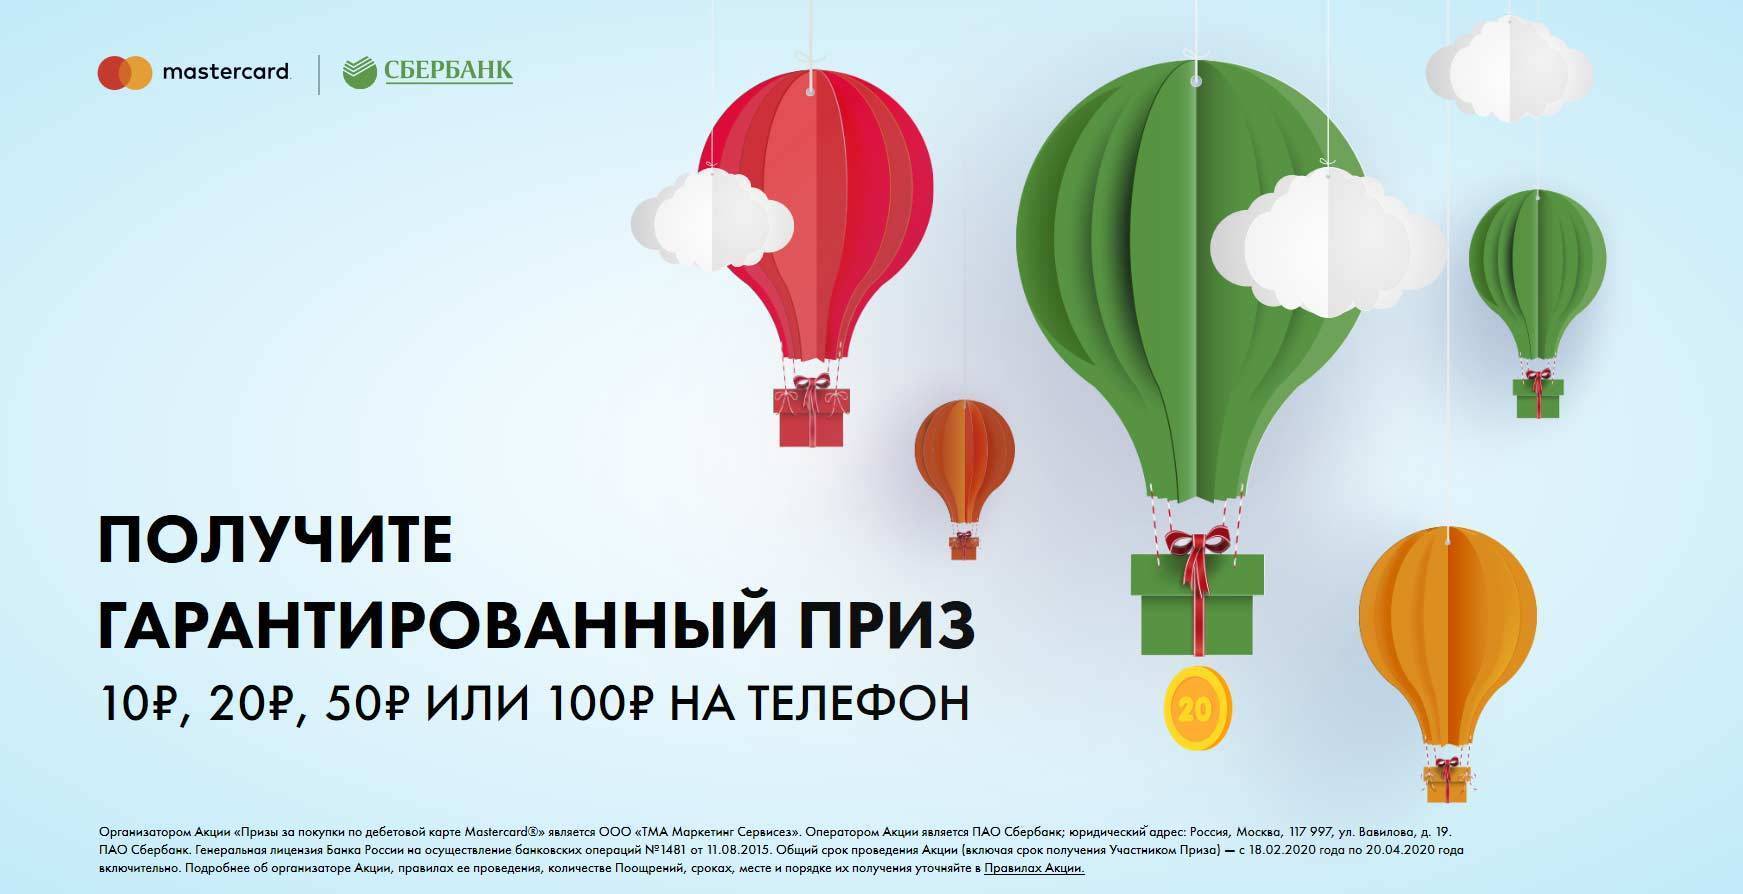 sberbank-quest.ru регистрация 